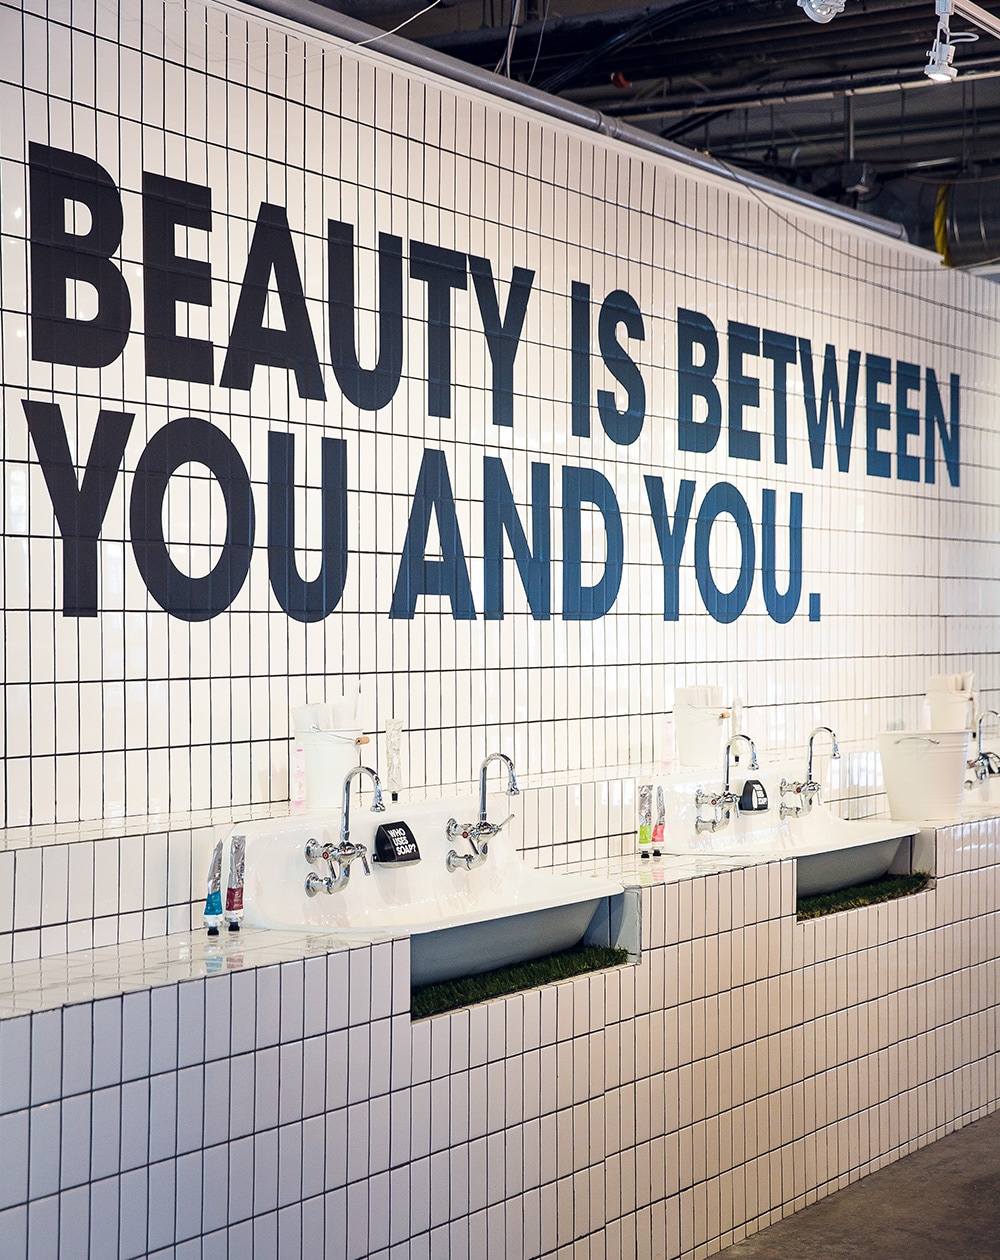 「美しさはあなたとあなたの間にあるもの」という標語。市内に6店舗ある。